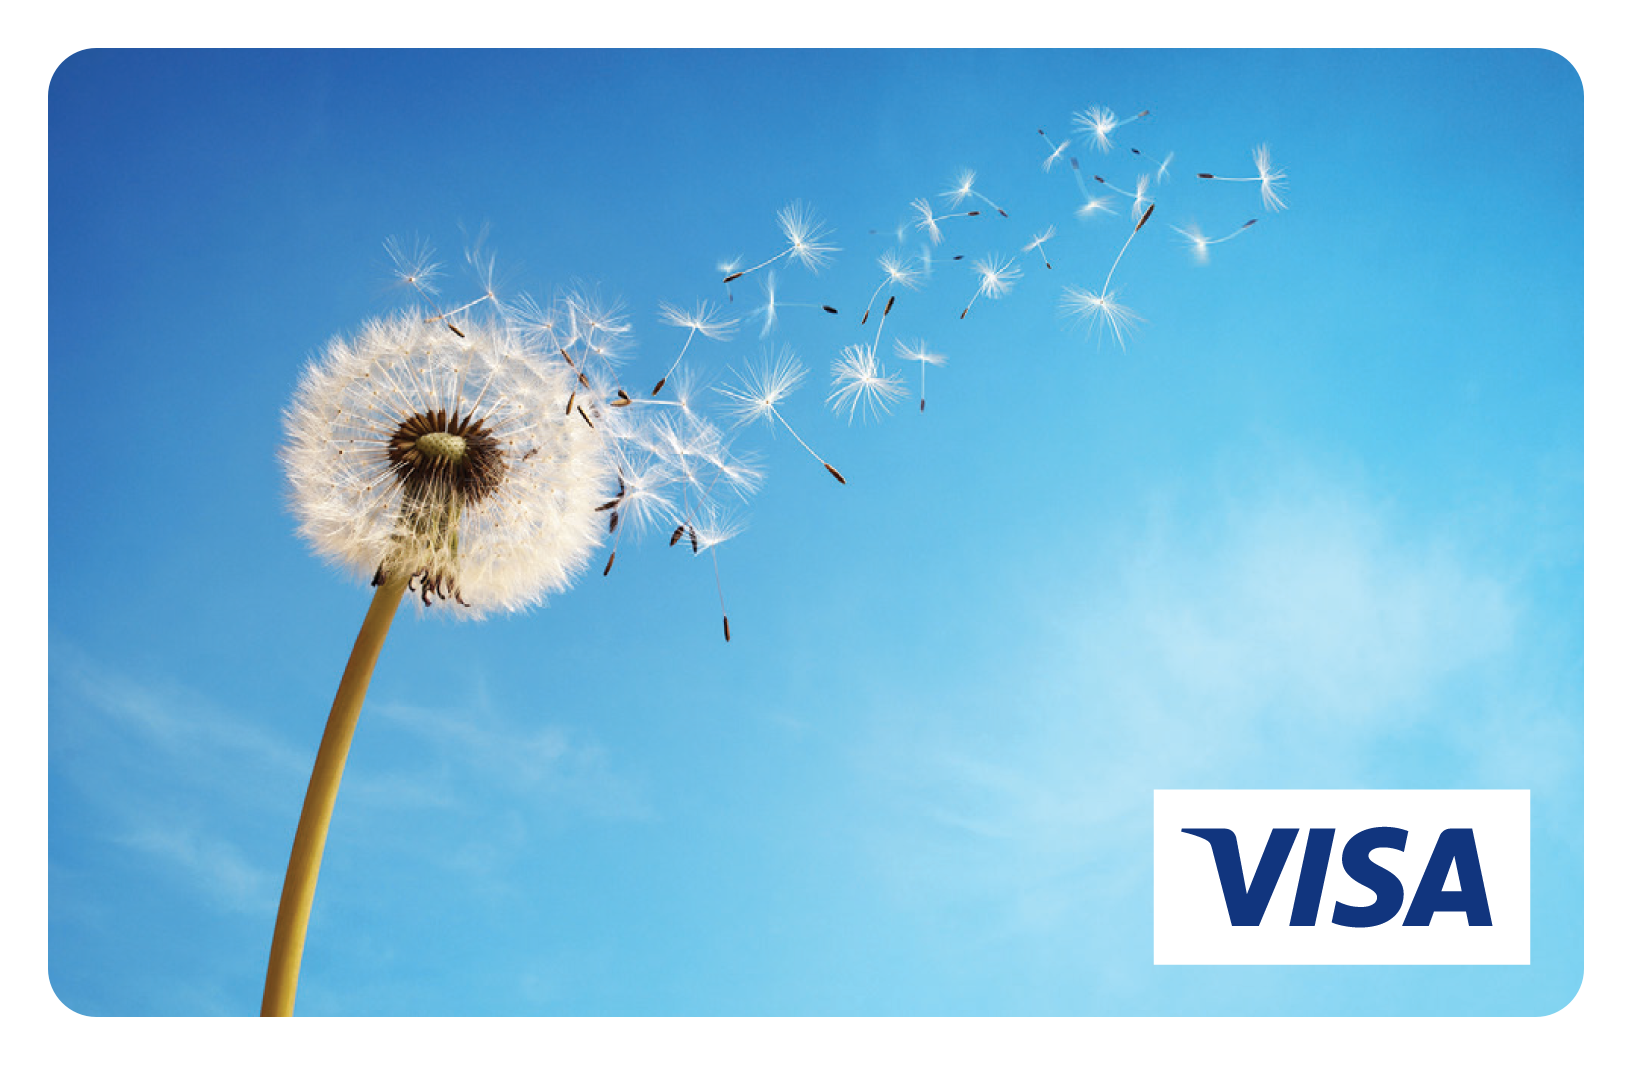 Dandelion prepaid visa card